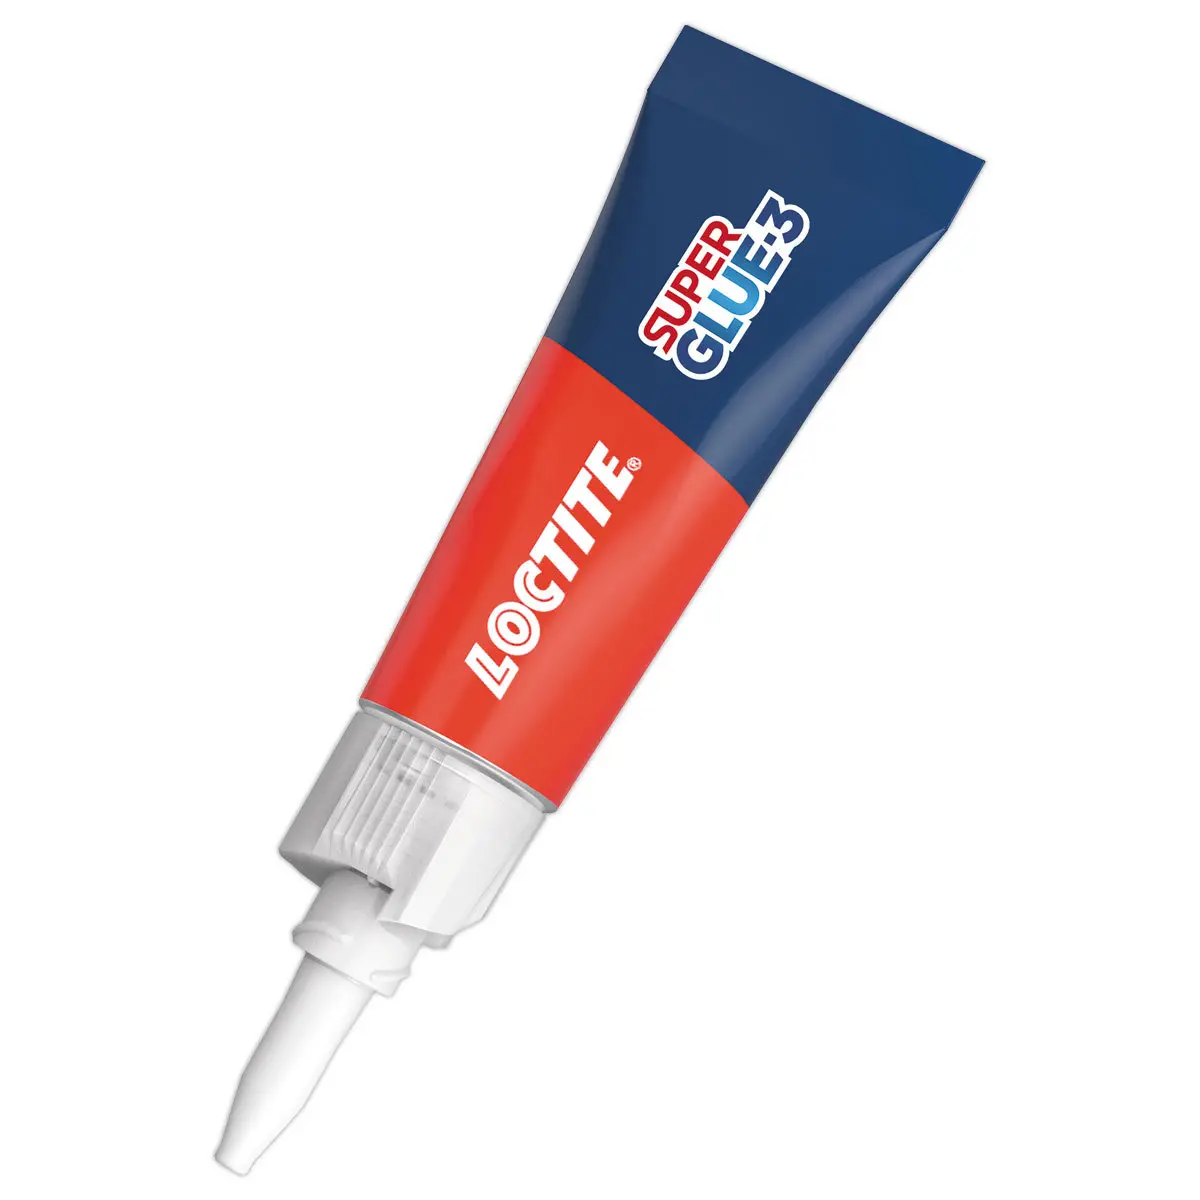 Colle super glue extra-forte liquide 3g - Loctite